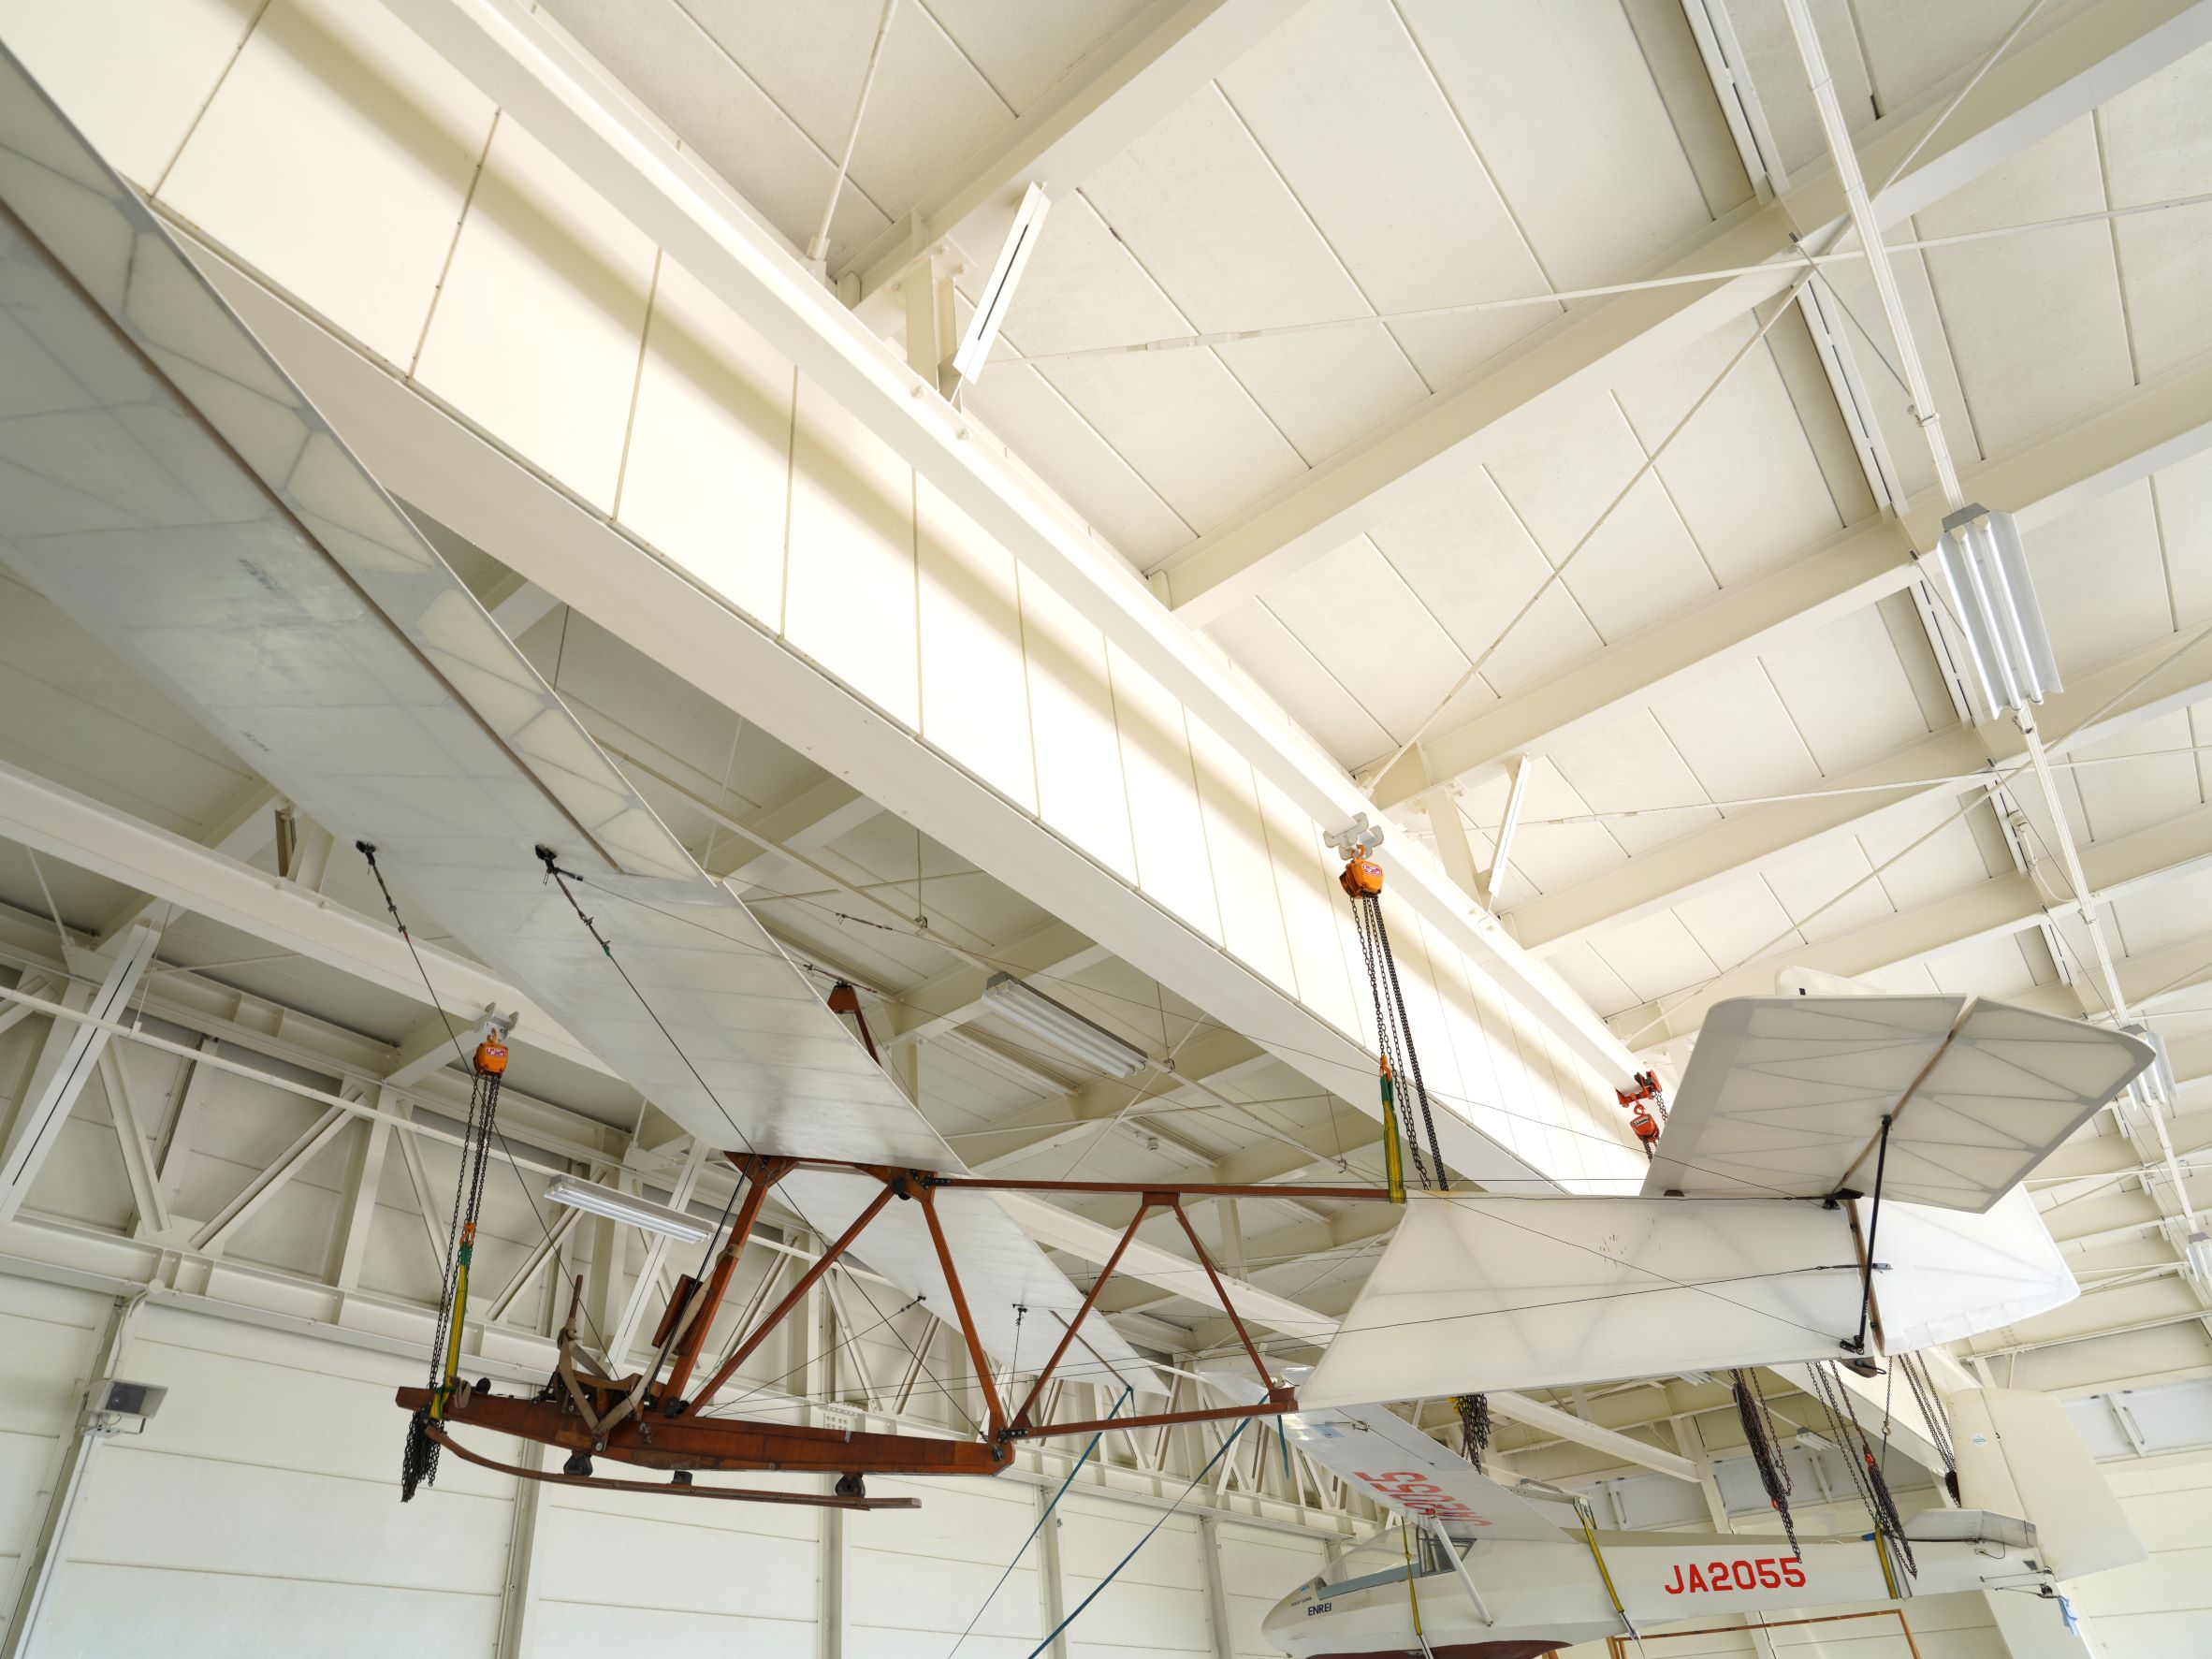 スカイミュージアムの中にはプライマリーグライダーと呼ばれる古い機体も展示されていた。